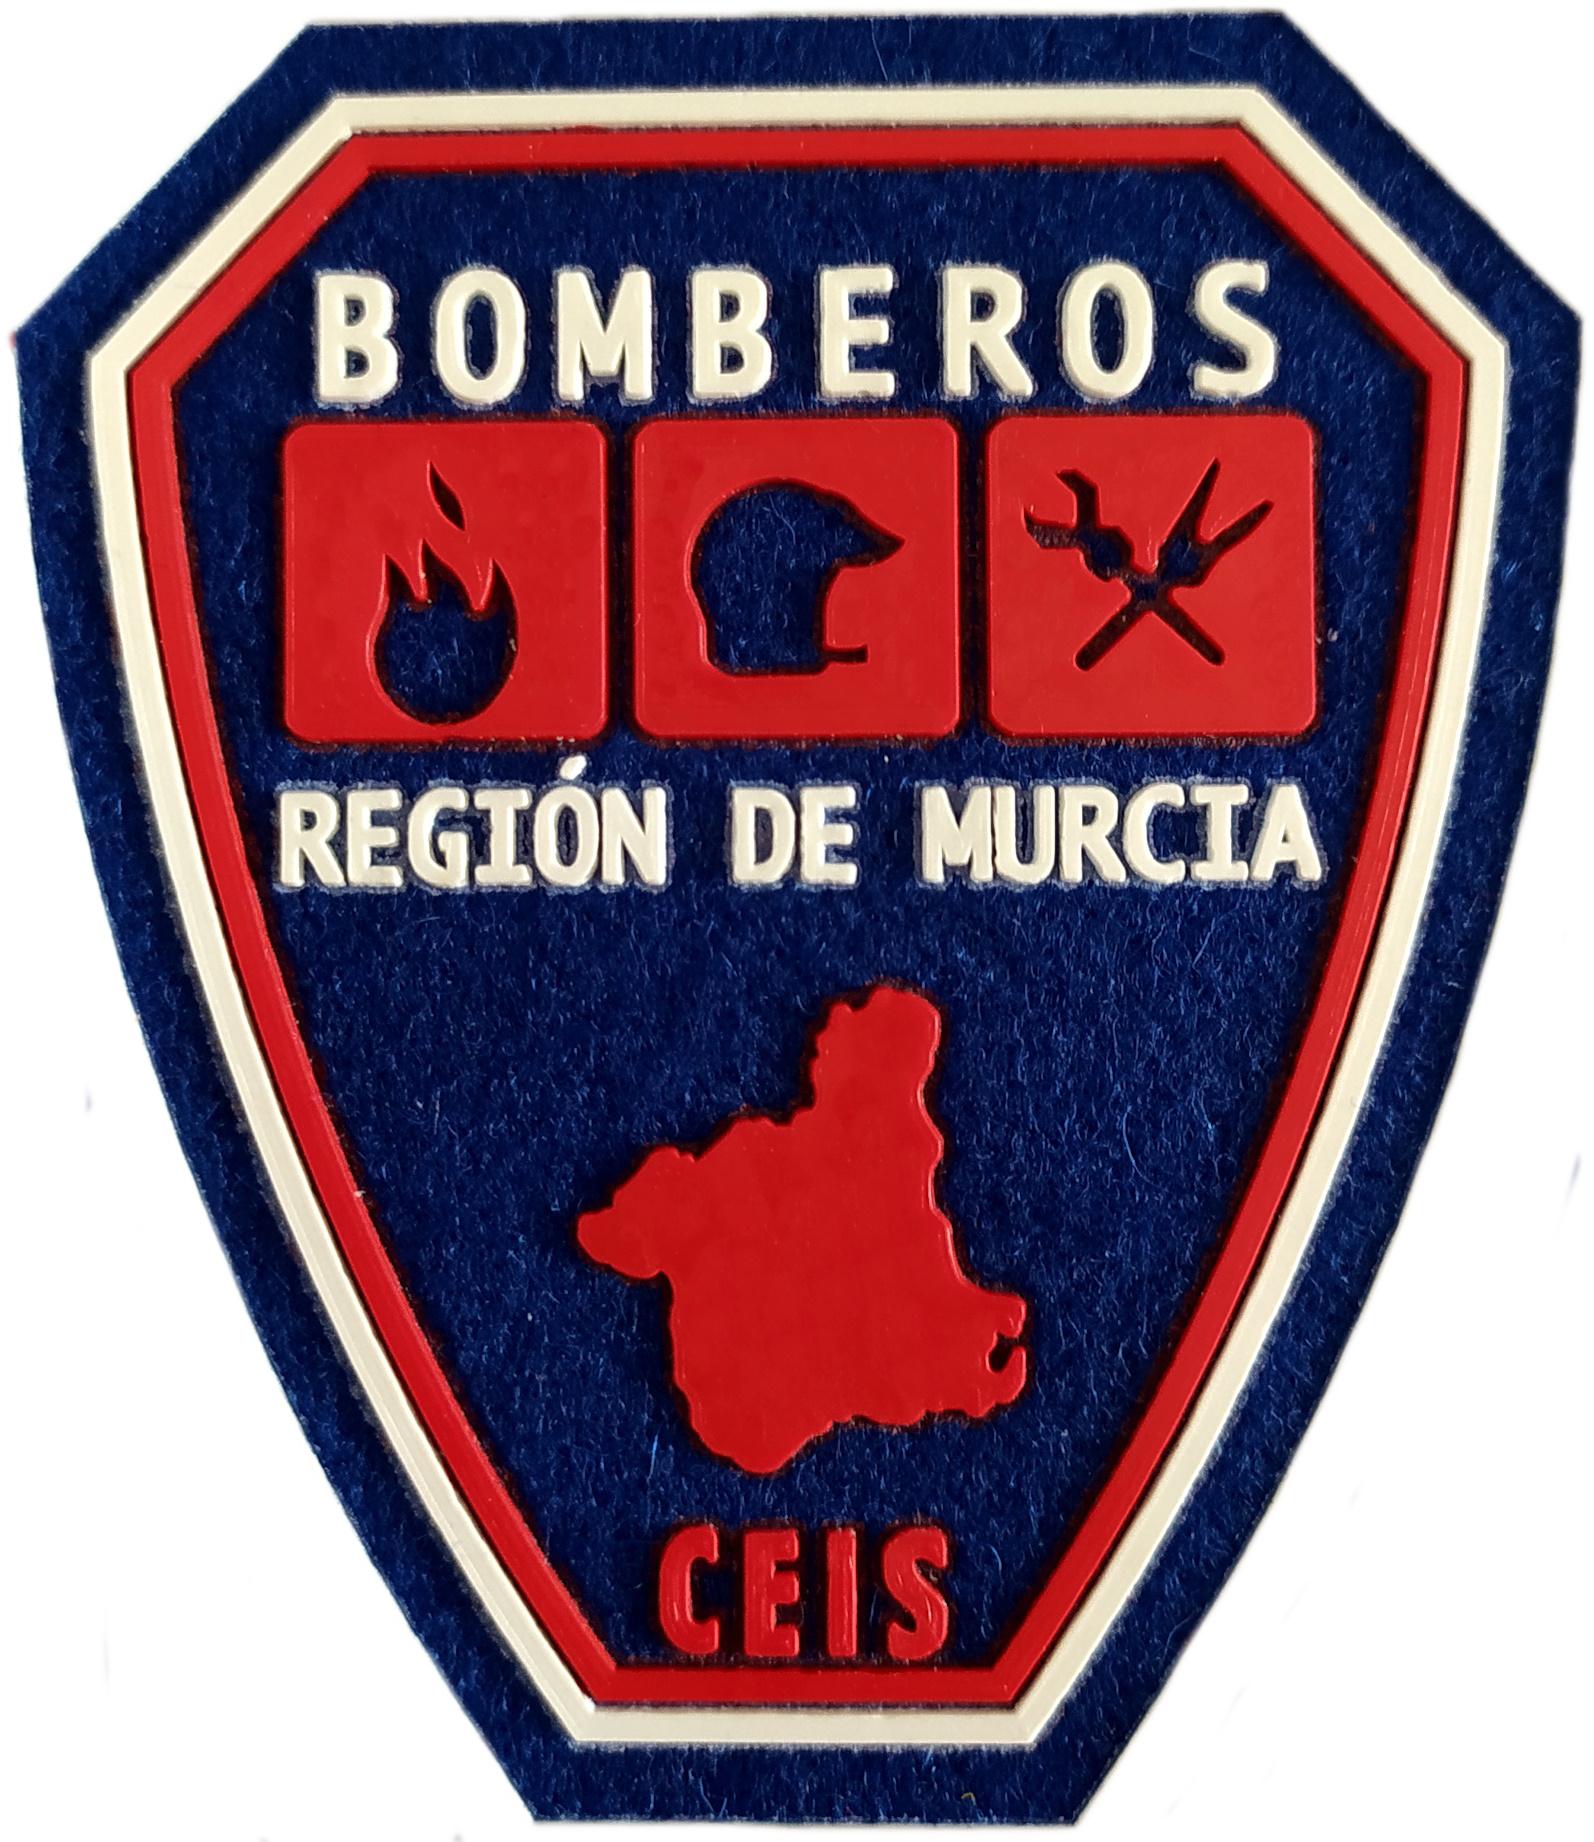 Bomberos de la Región de Murcia CEIS Centro de Extinción de Incendios y Salvamento parche insignia emblema distintivo Fire Dept